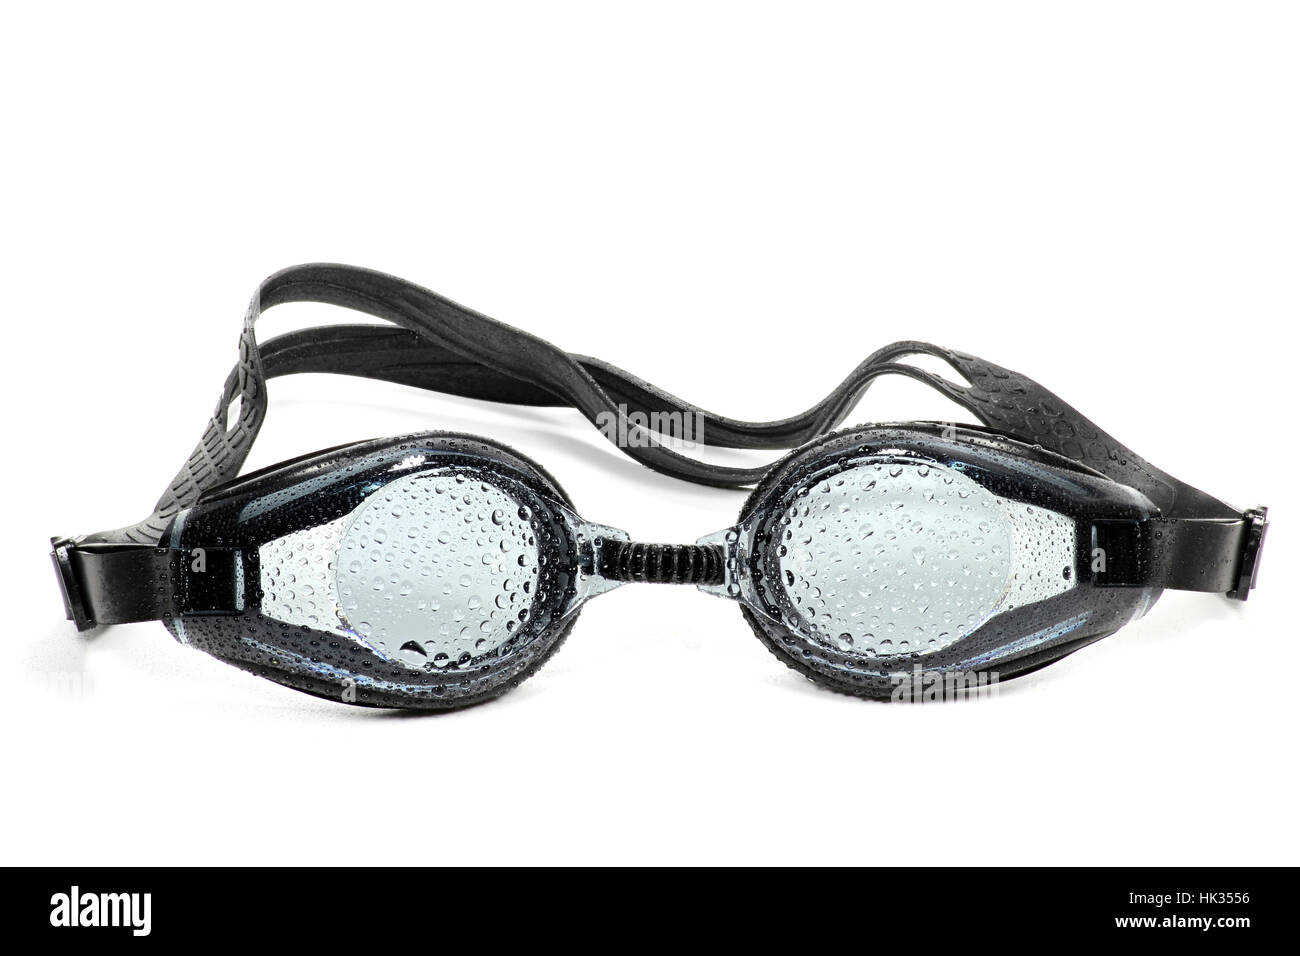 Wet occhiali da nuoto isolati su sfondo bianco Foto Stock